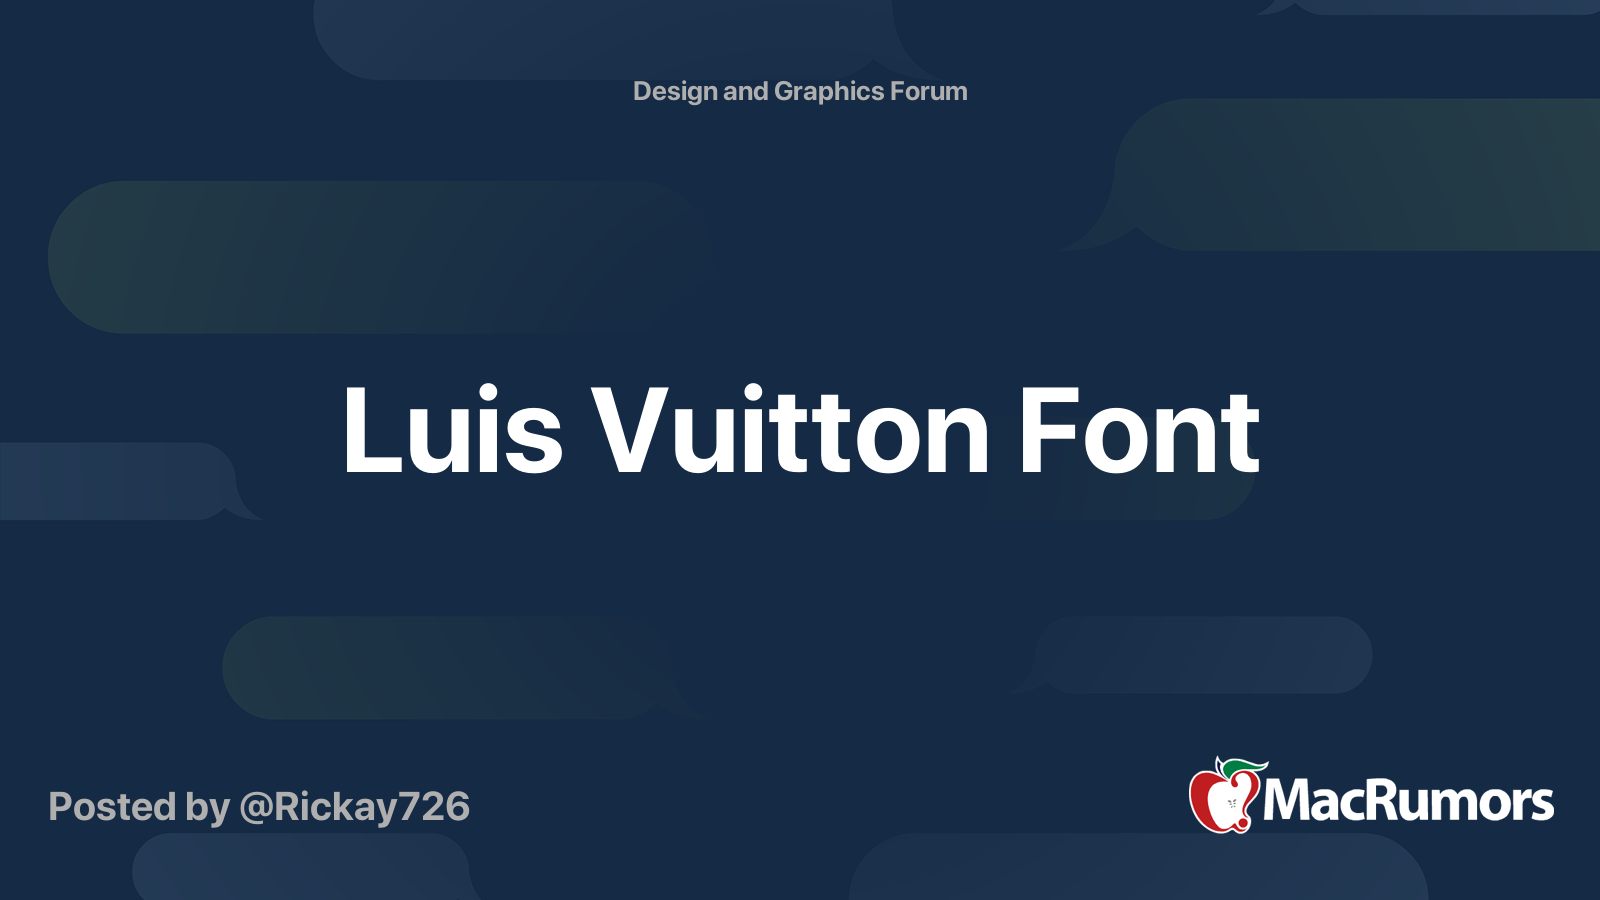 Luis Vuitton Font